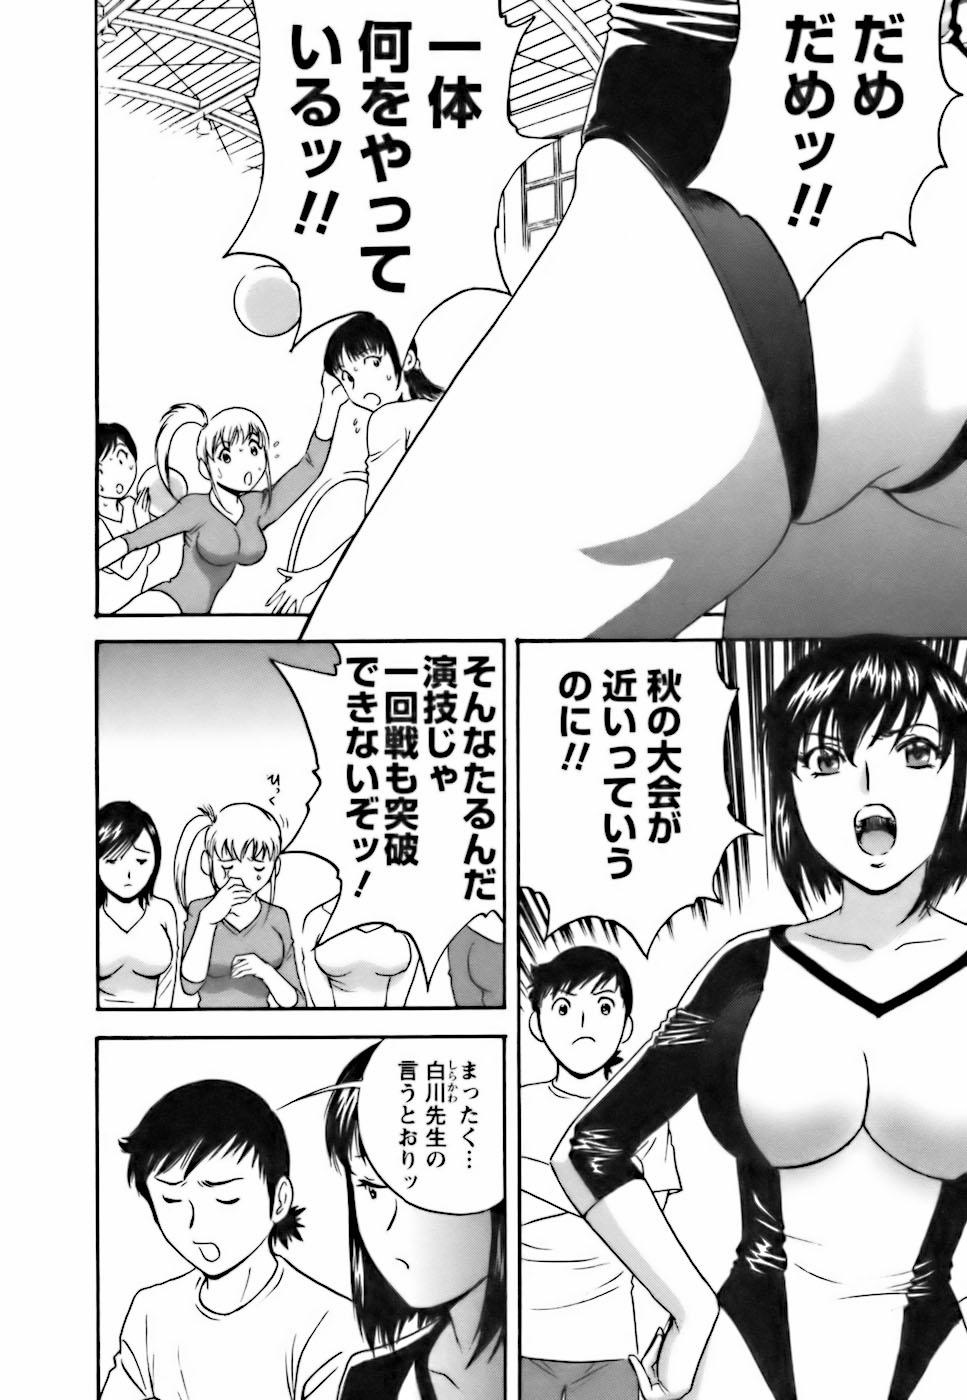 [Hidemaru] Mo-Retsu! Boin Sensei (Boing Boing Teacher) Vol.3 69